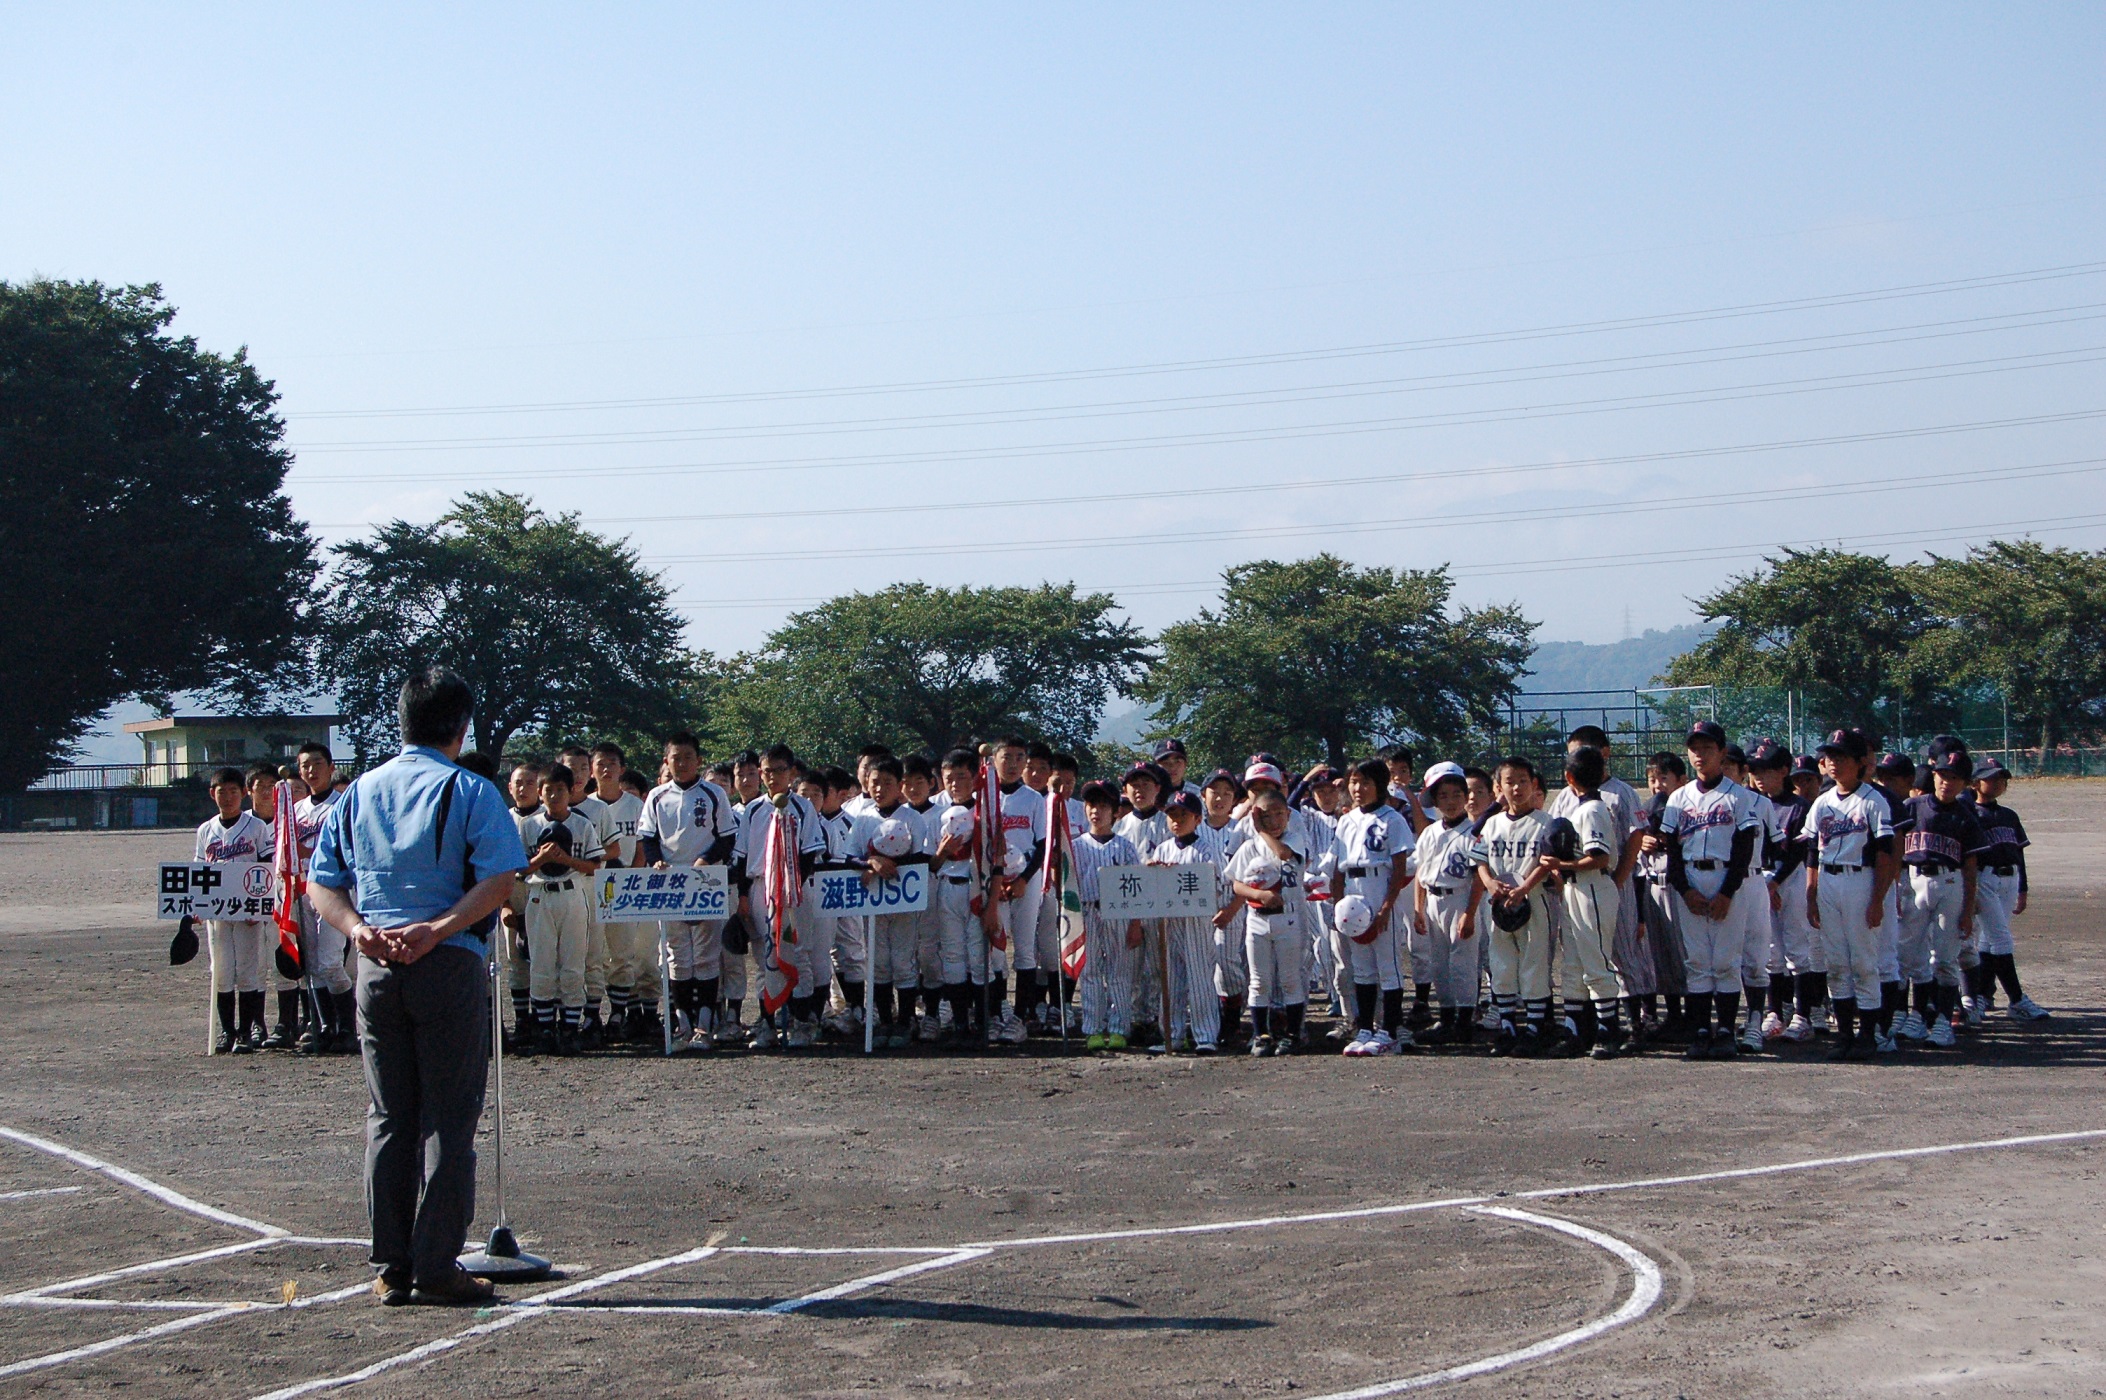 コトヒラ杯スポーツ少年団野球大会に集まった子どもたちの写真